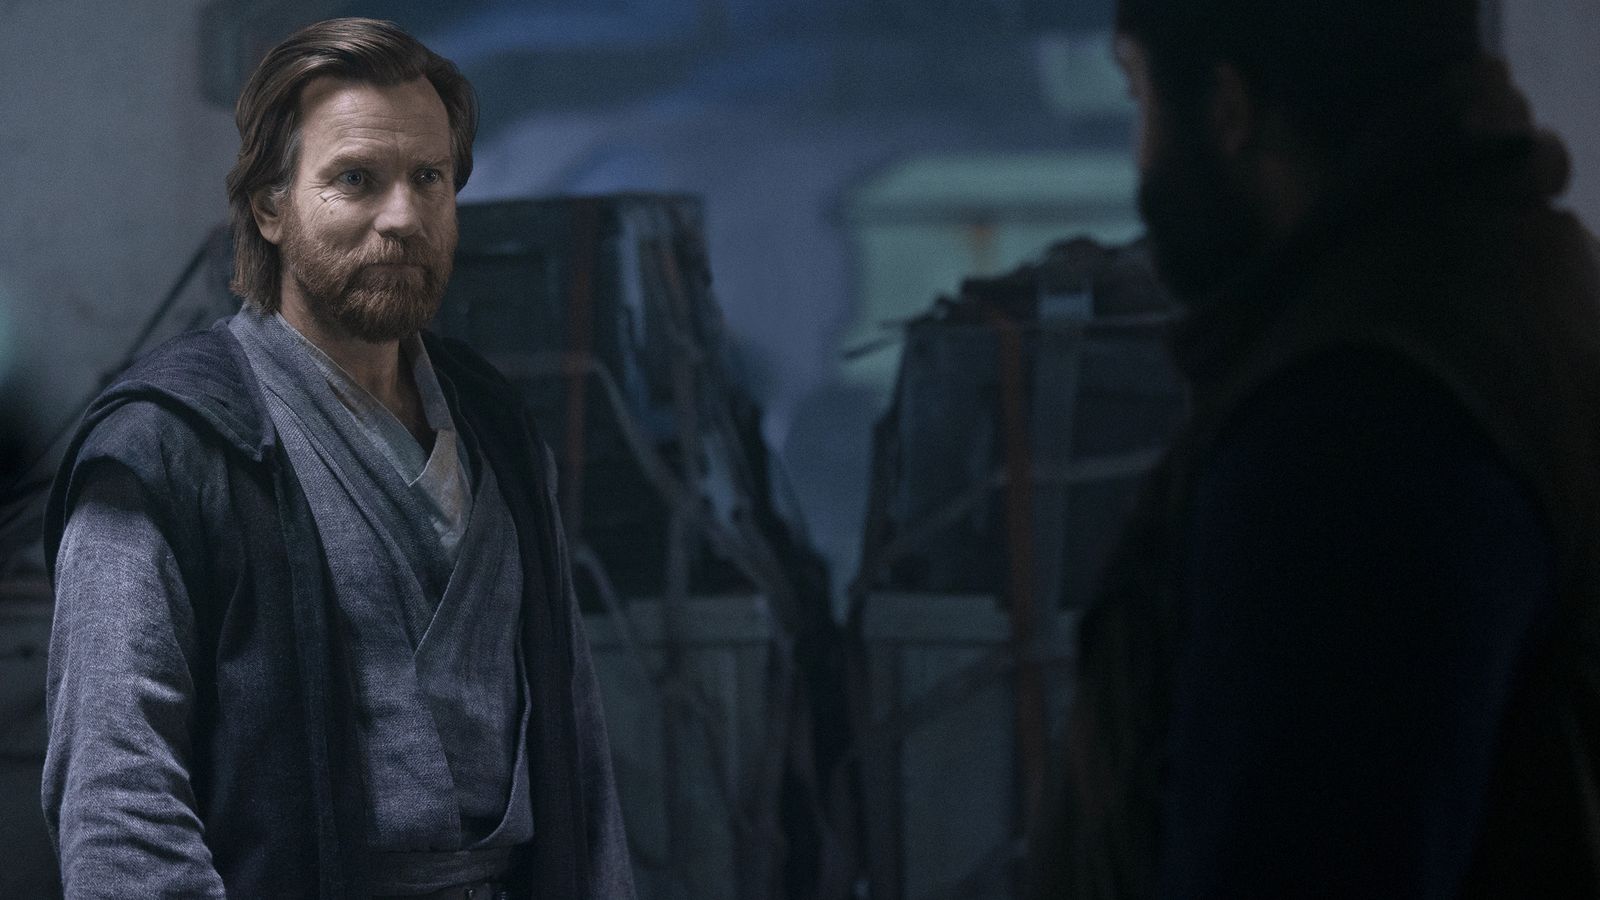 Ewan McGregor reprising his role as Obi-Wan Kenobi